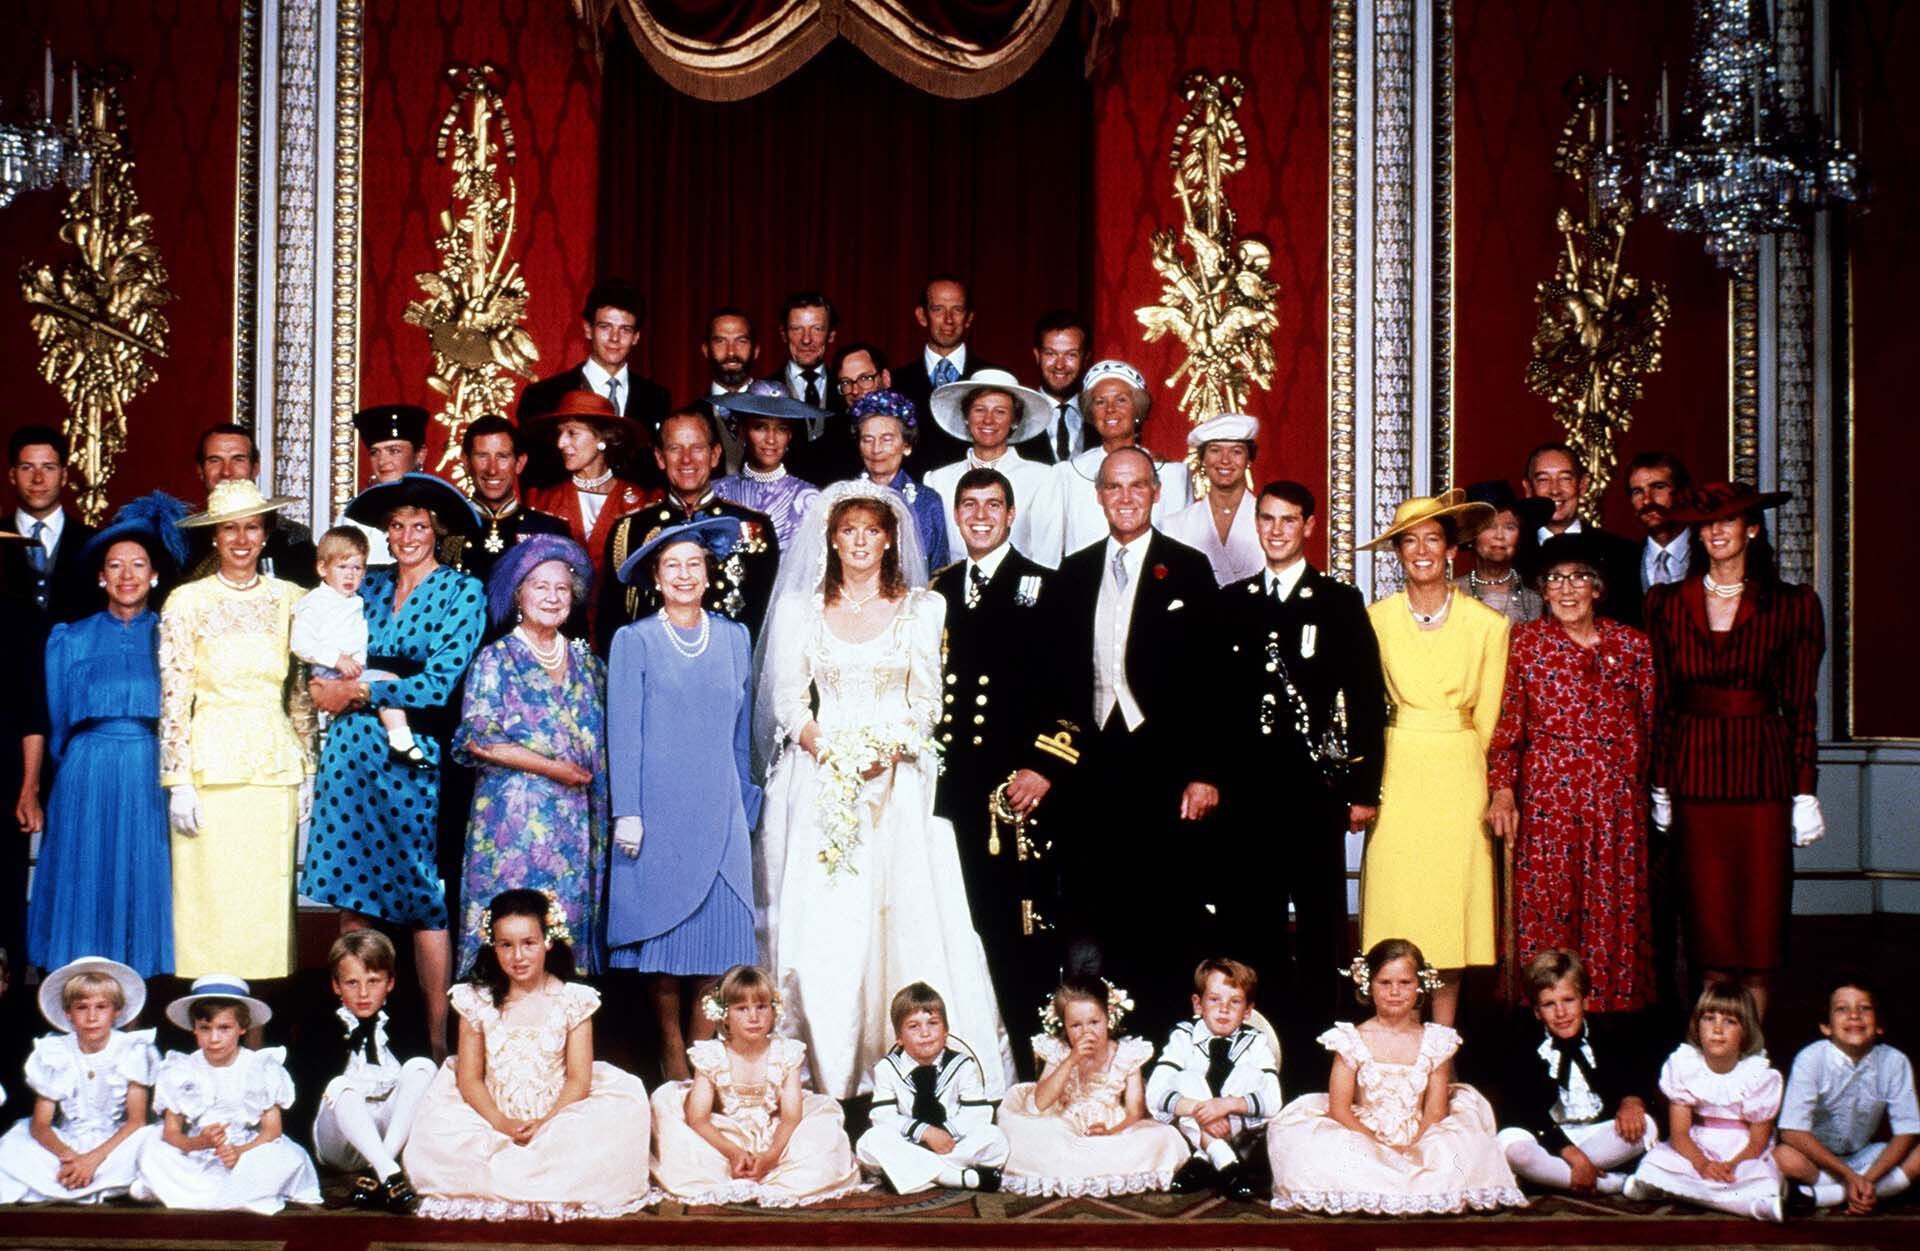 Casamiento del príncipe Andrew y Sarah Ferguson ((Mandatory Credit: Photo by Shutterstock))
